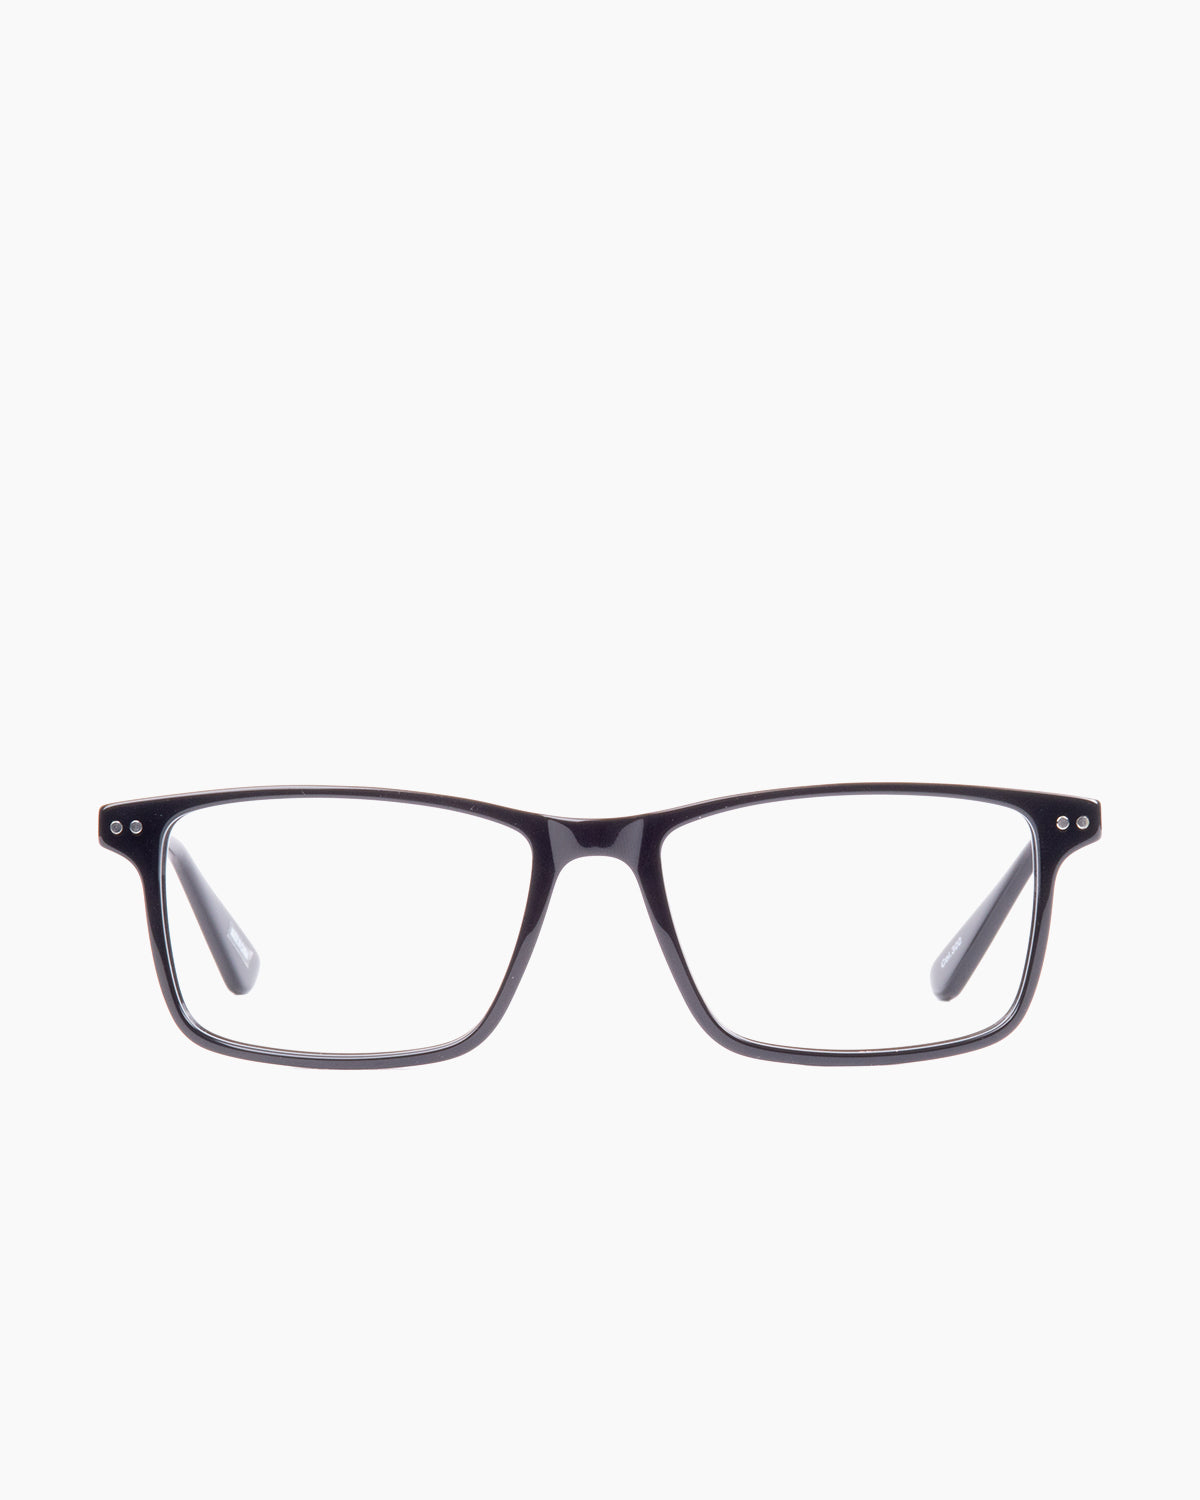 Evolve-Willis-300 | glasses bar